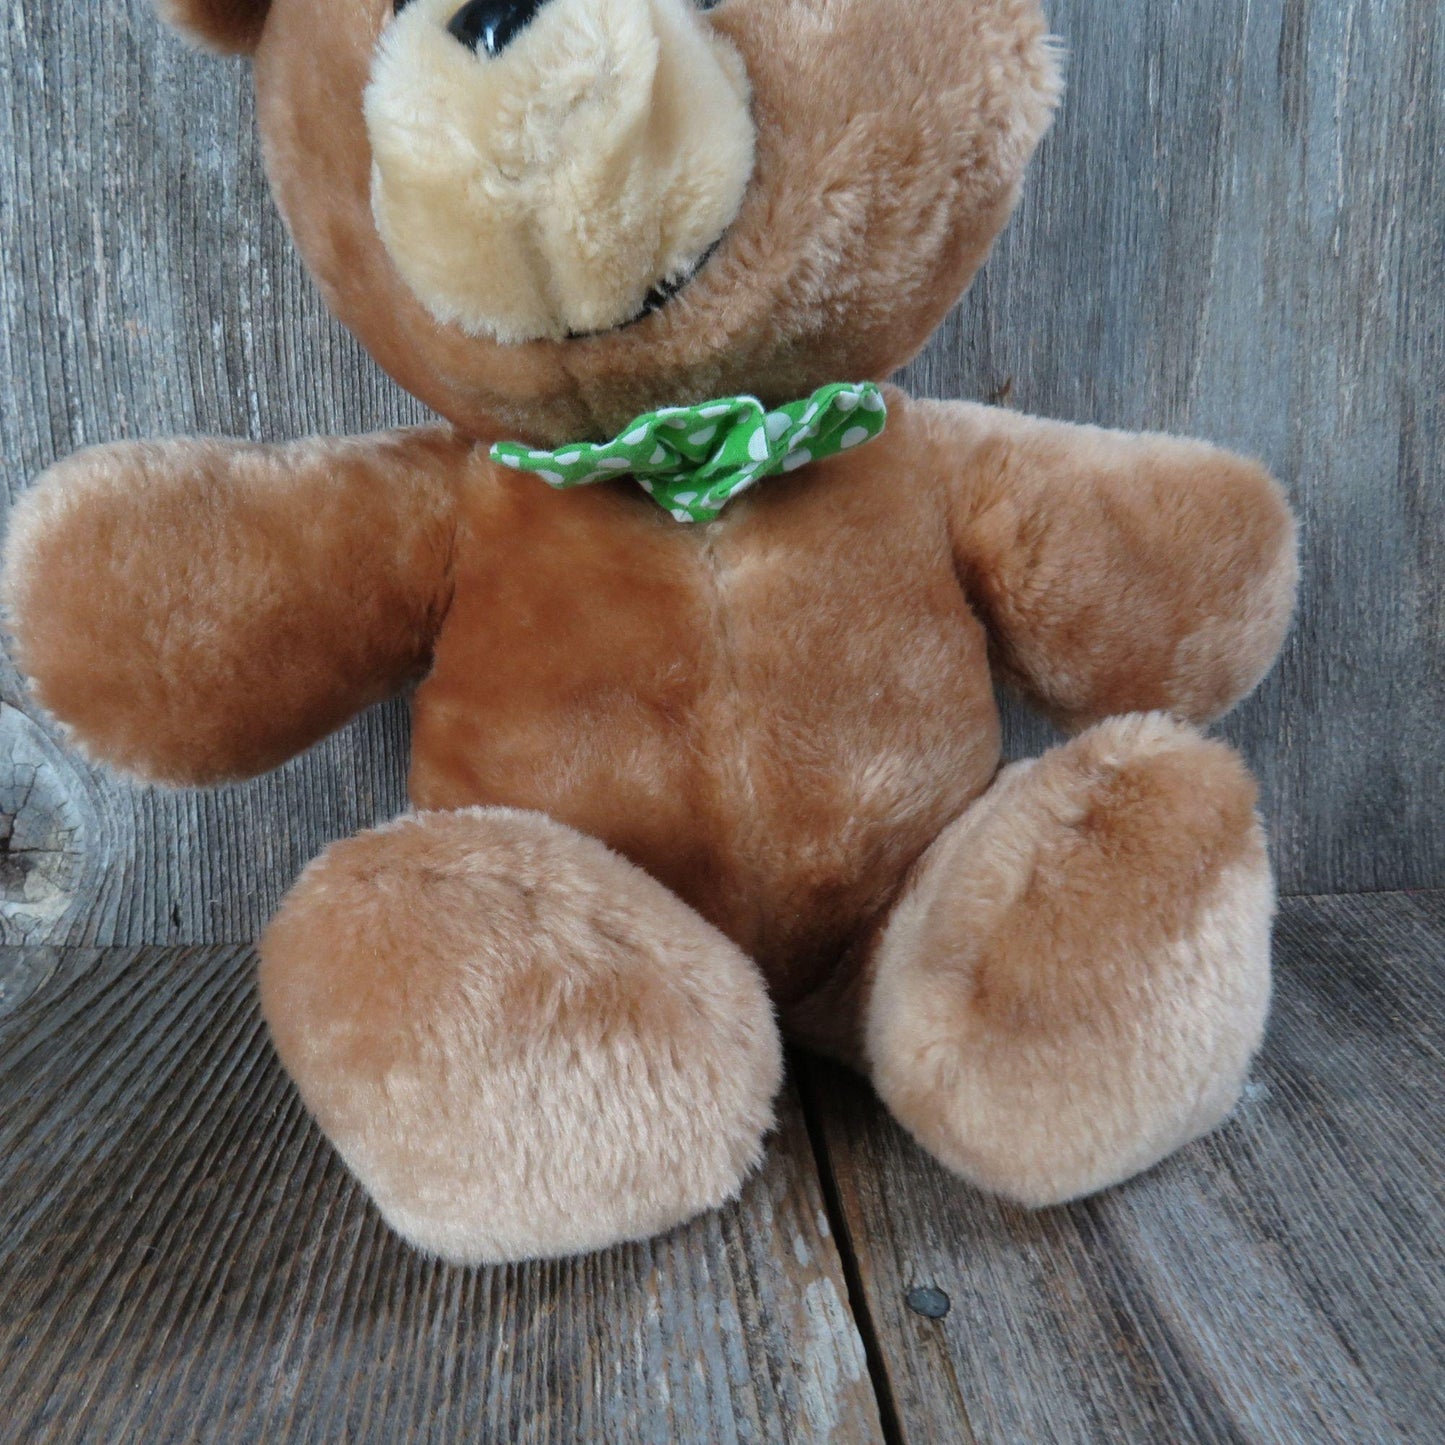 Vintage Teddy Bear Plush Green Bow Tie Stuffed Animal Fair Polka Dot